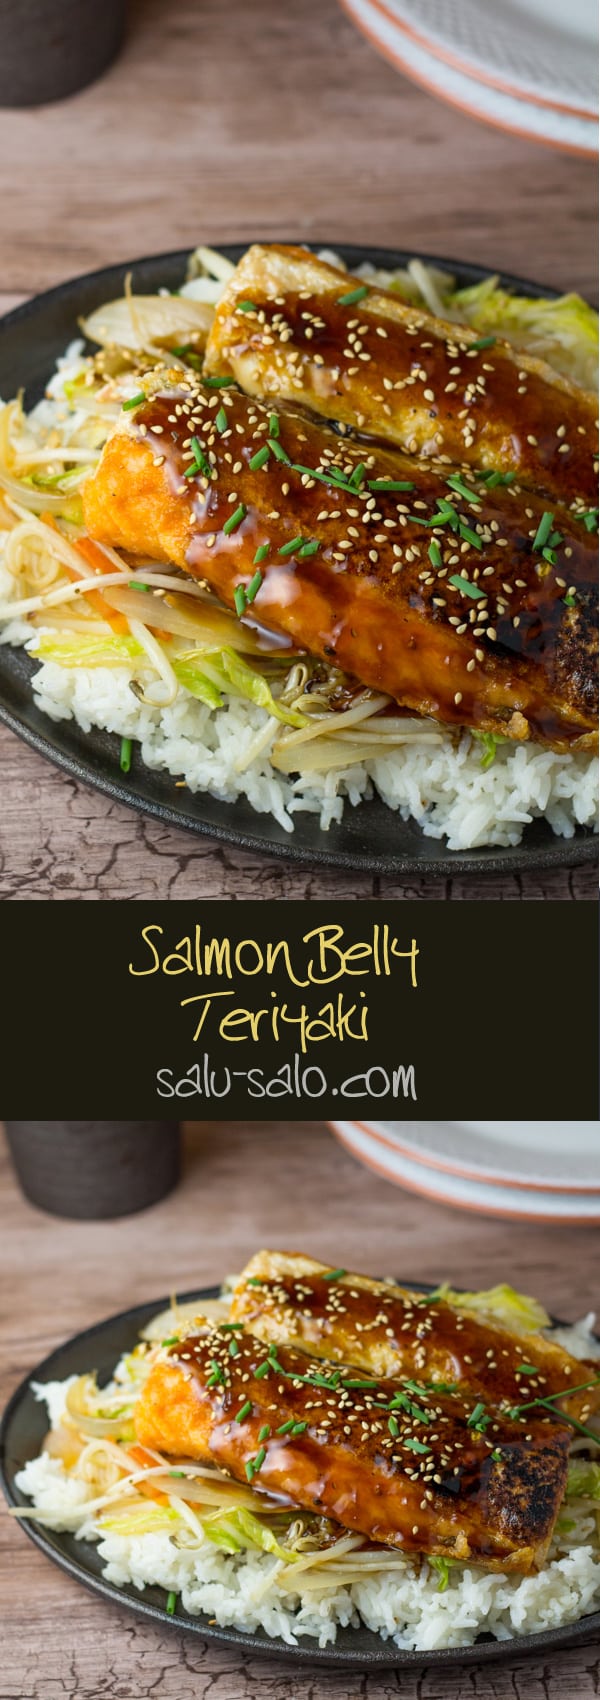 Salmon Belly Teriyaki